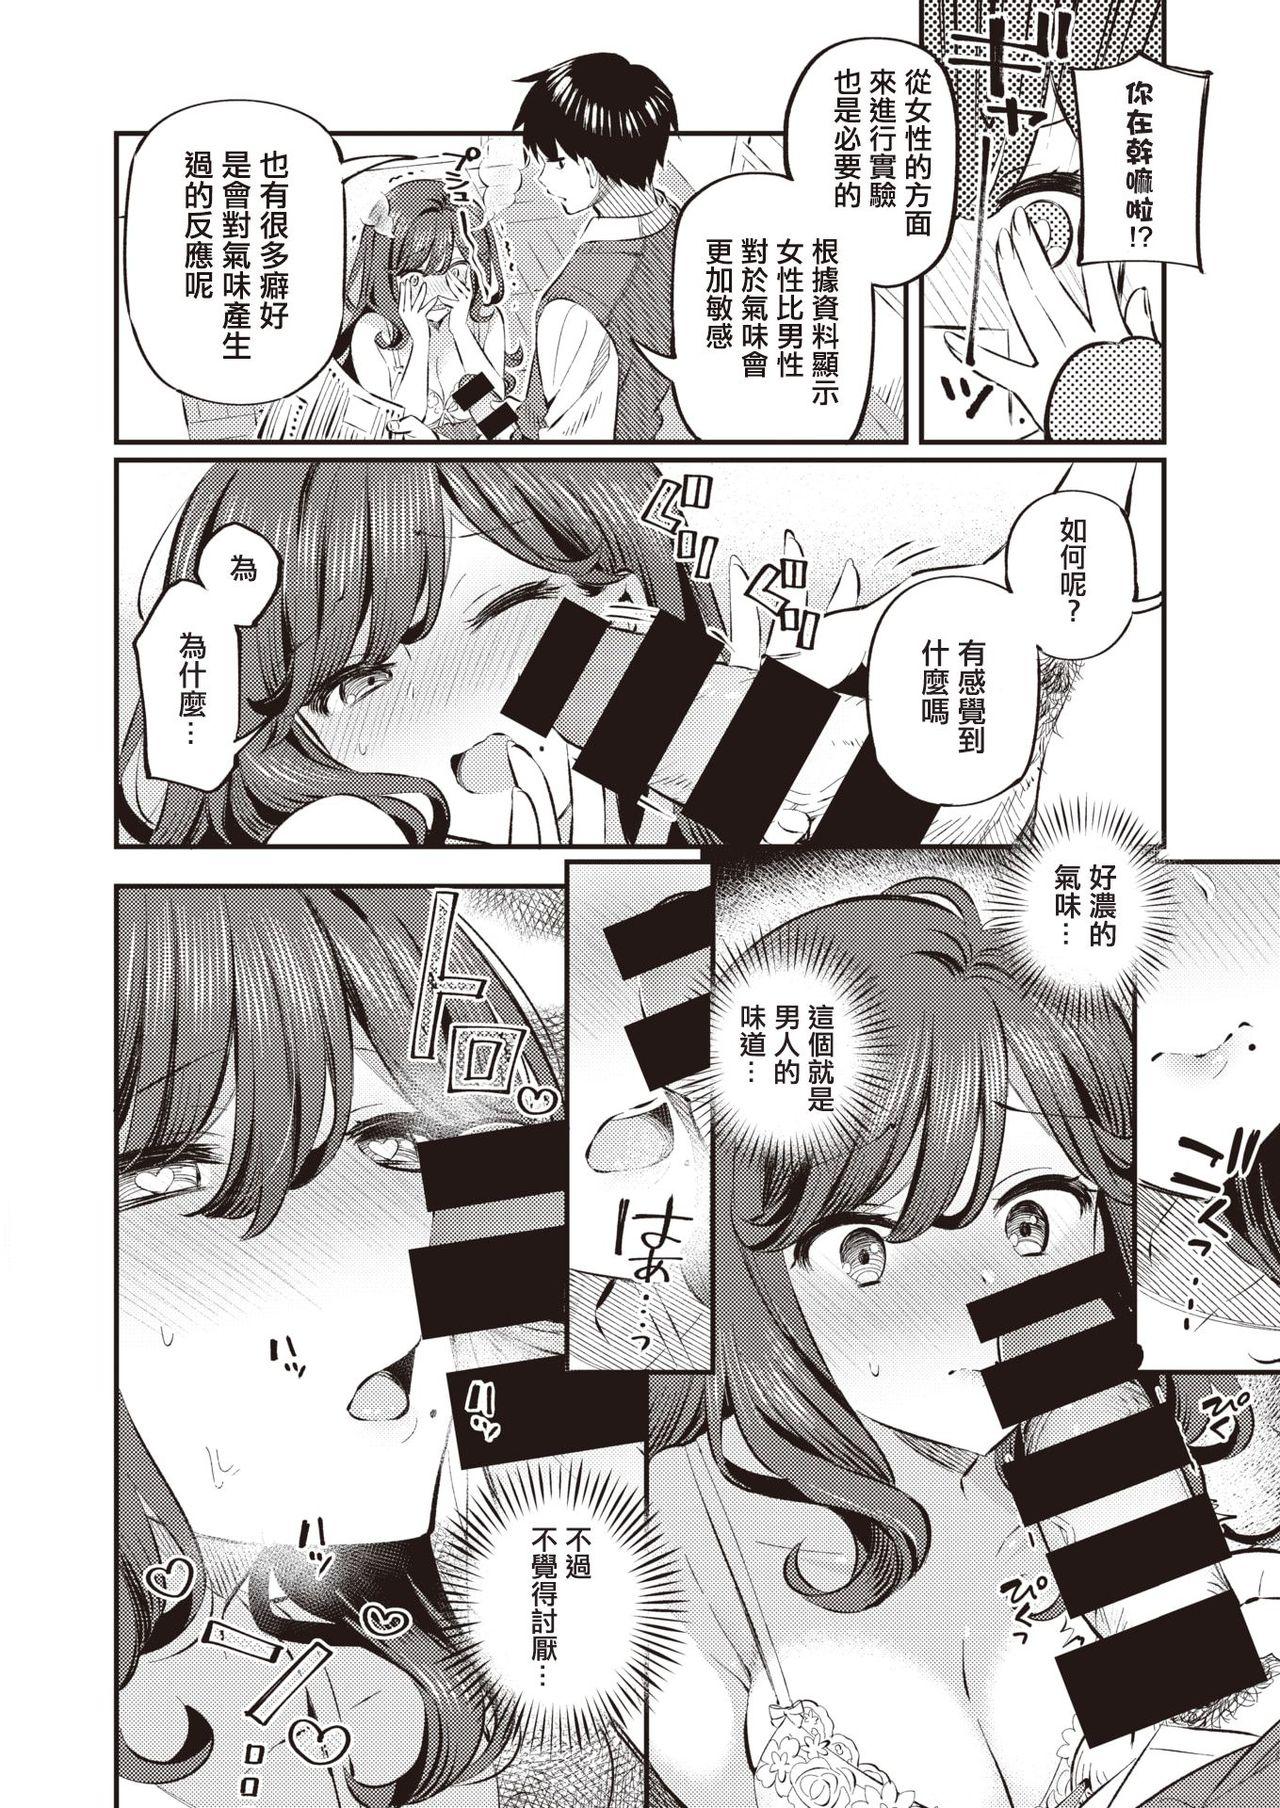 Curious Anata no Feti wa Doko kara? Culo - Page 12